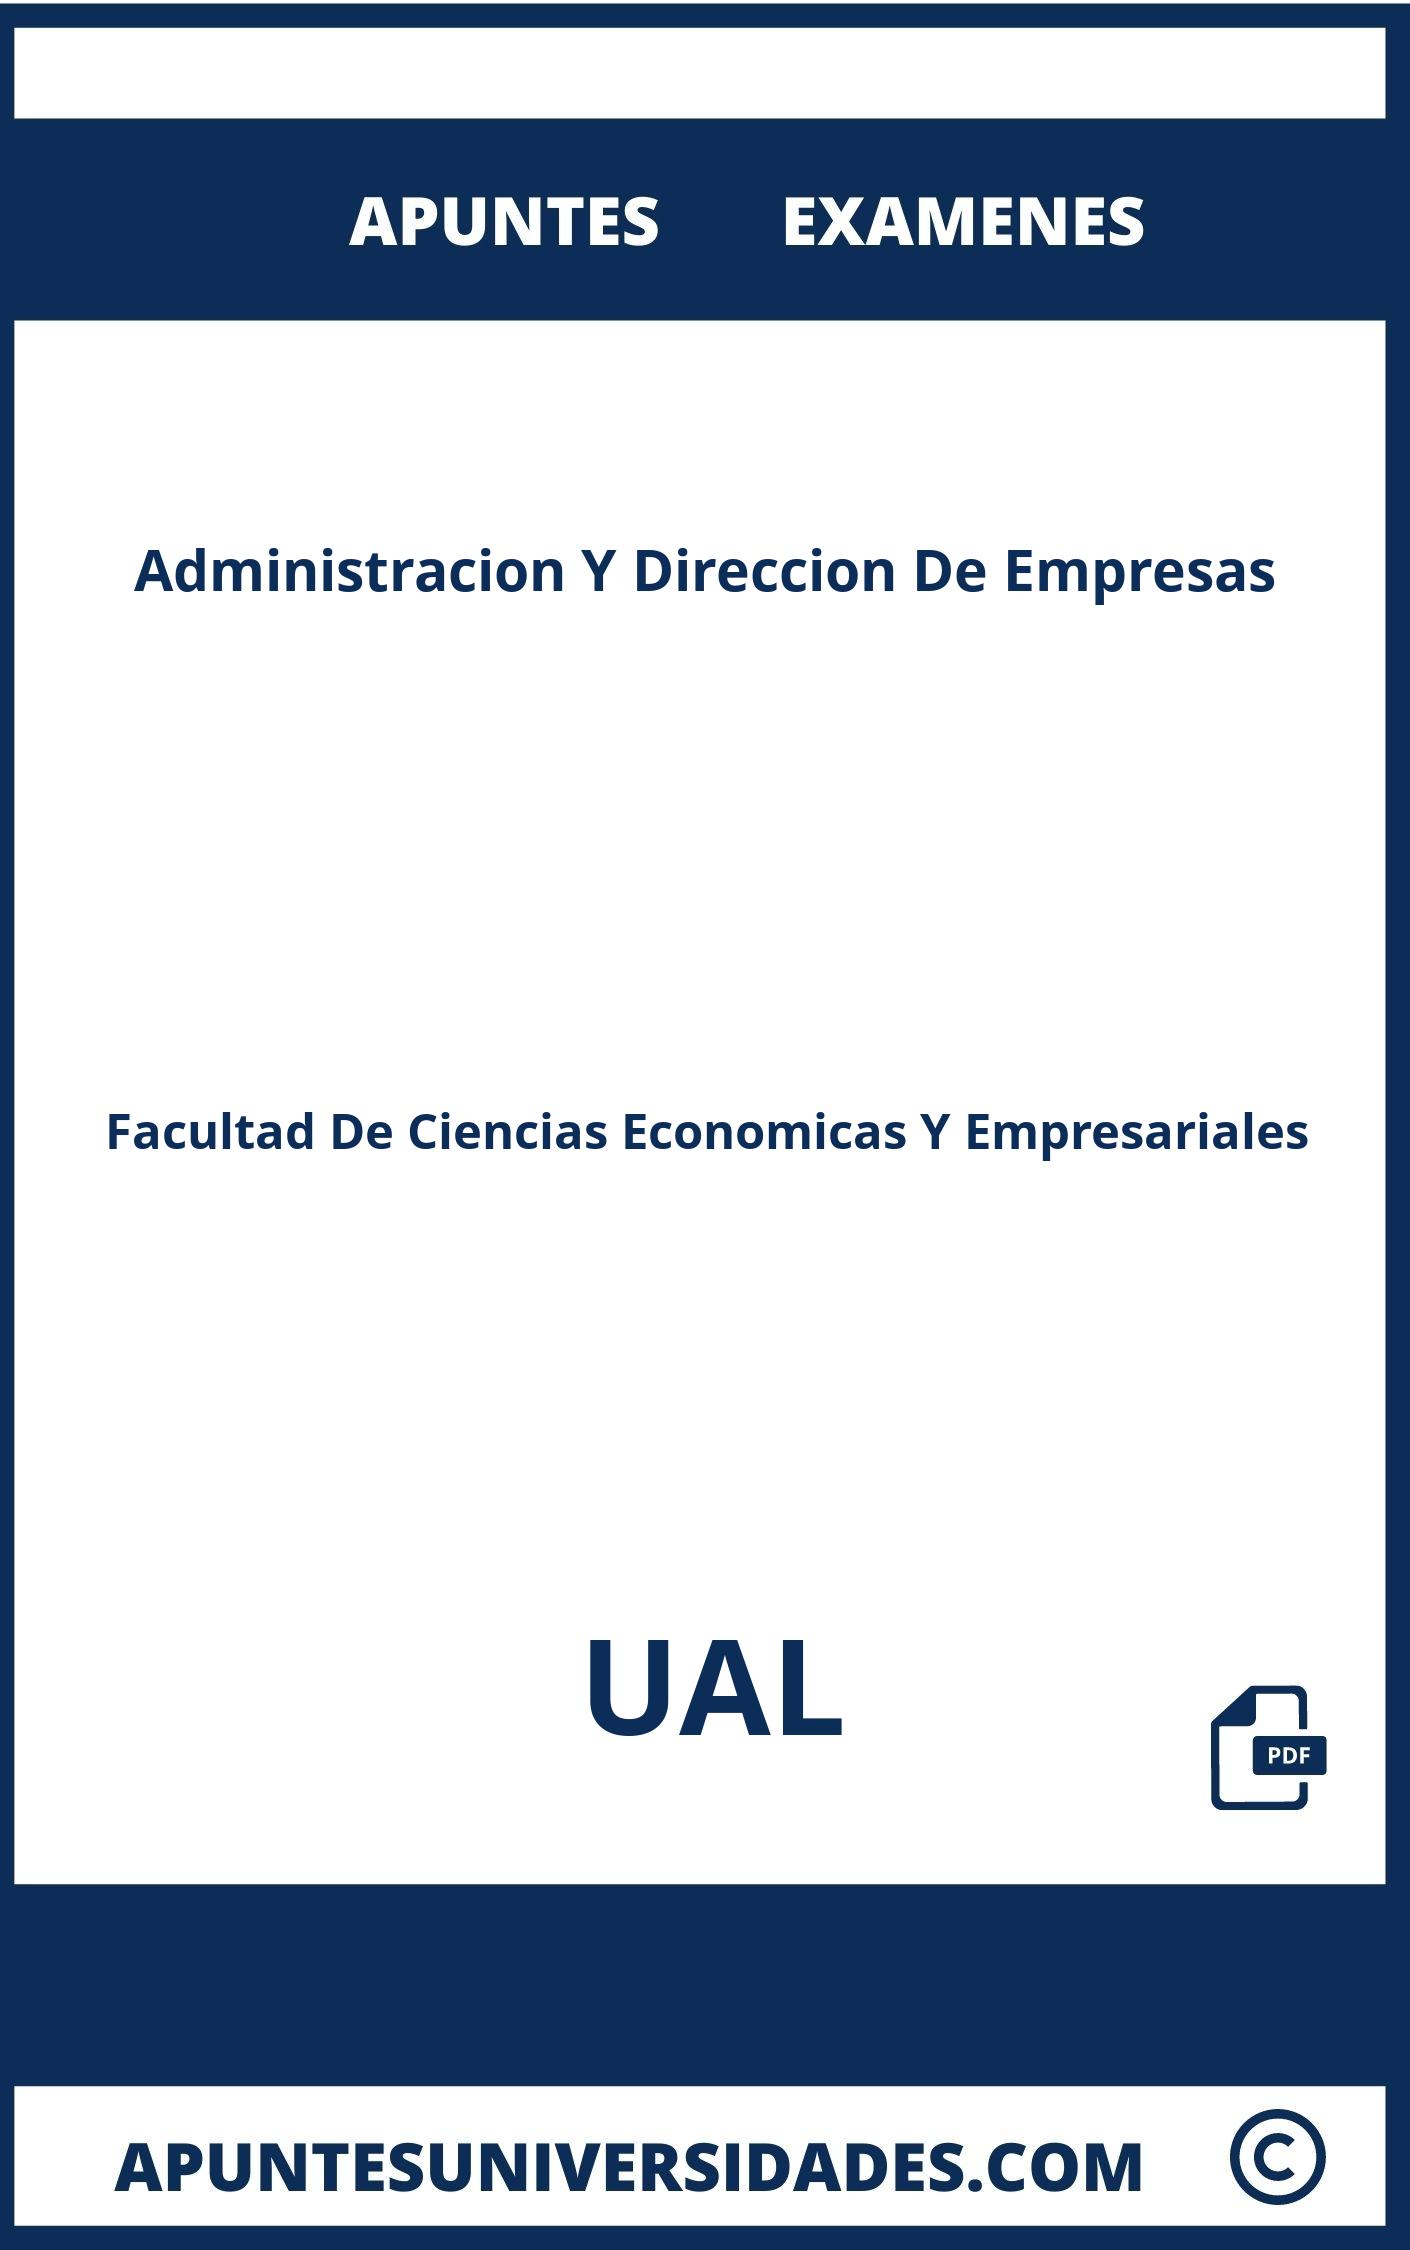 Apuntes Examenes Administracion Y Direccion De Empresas UAL